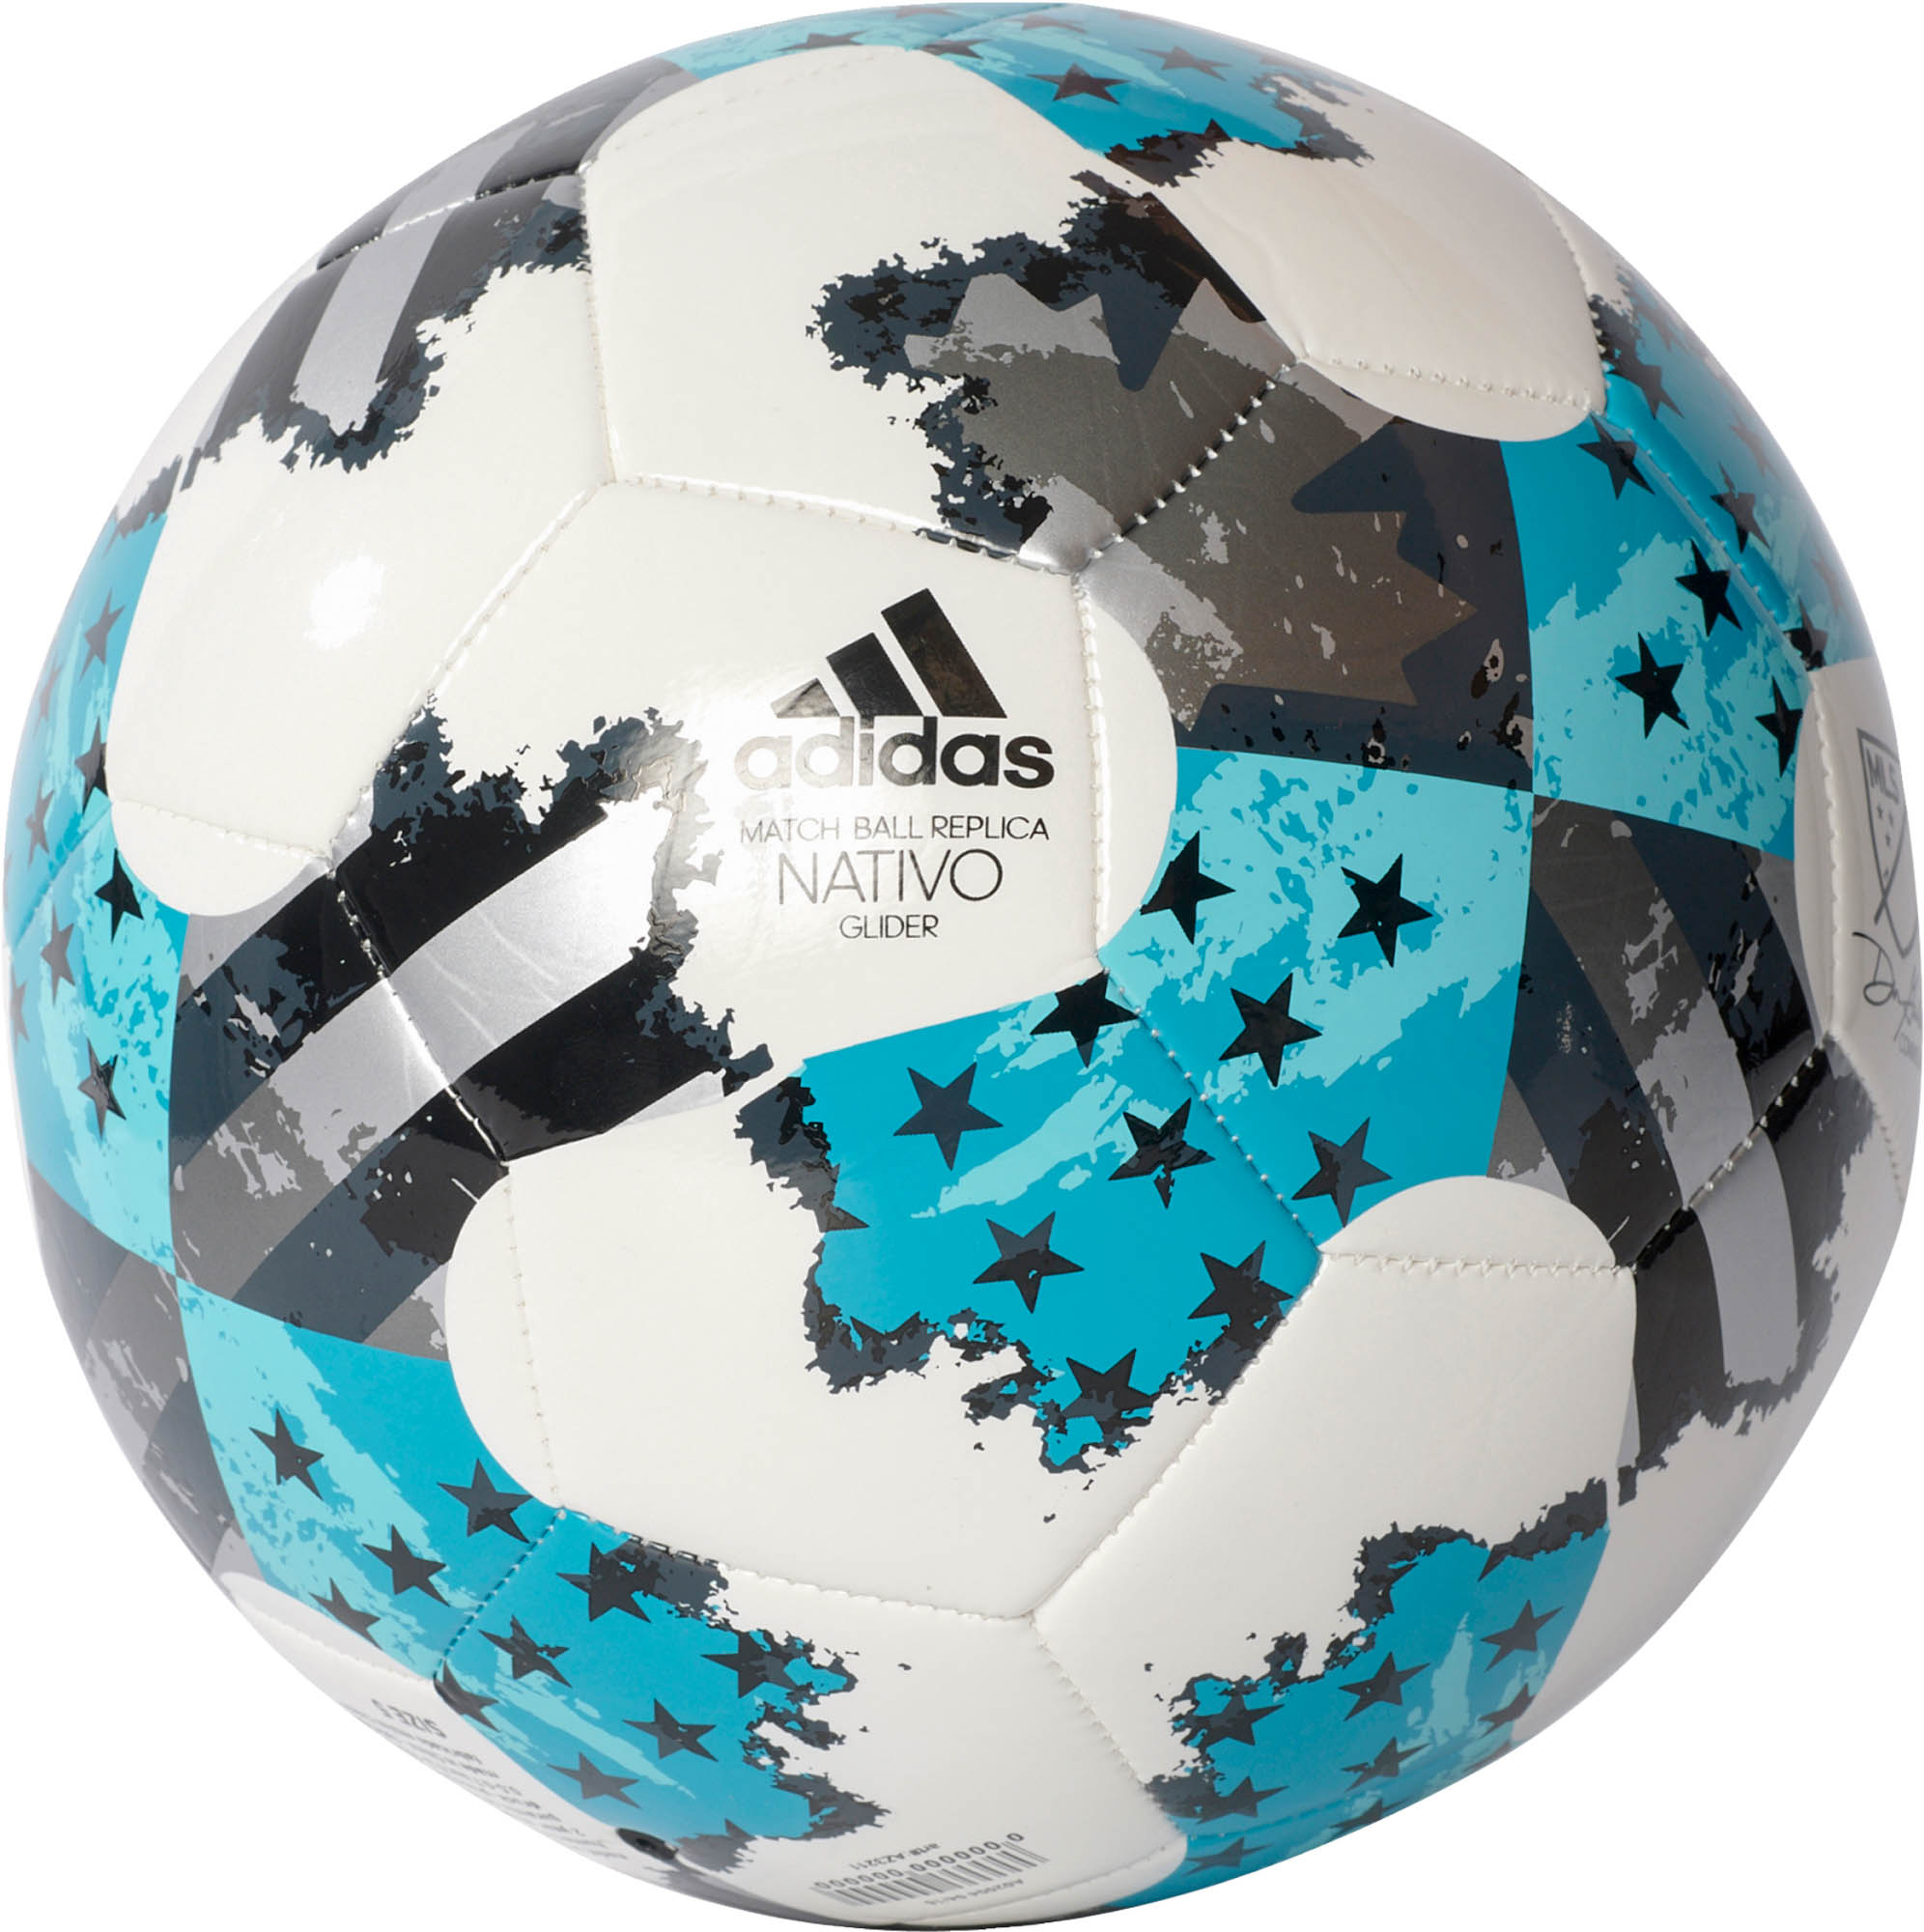 adidas 2018 mls glider soccer ball